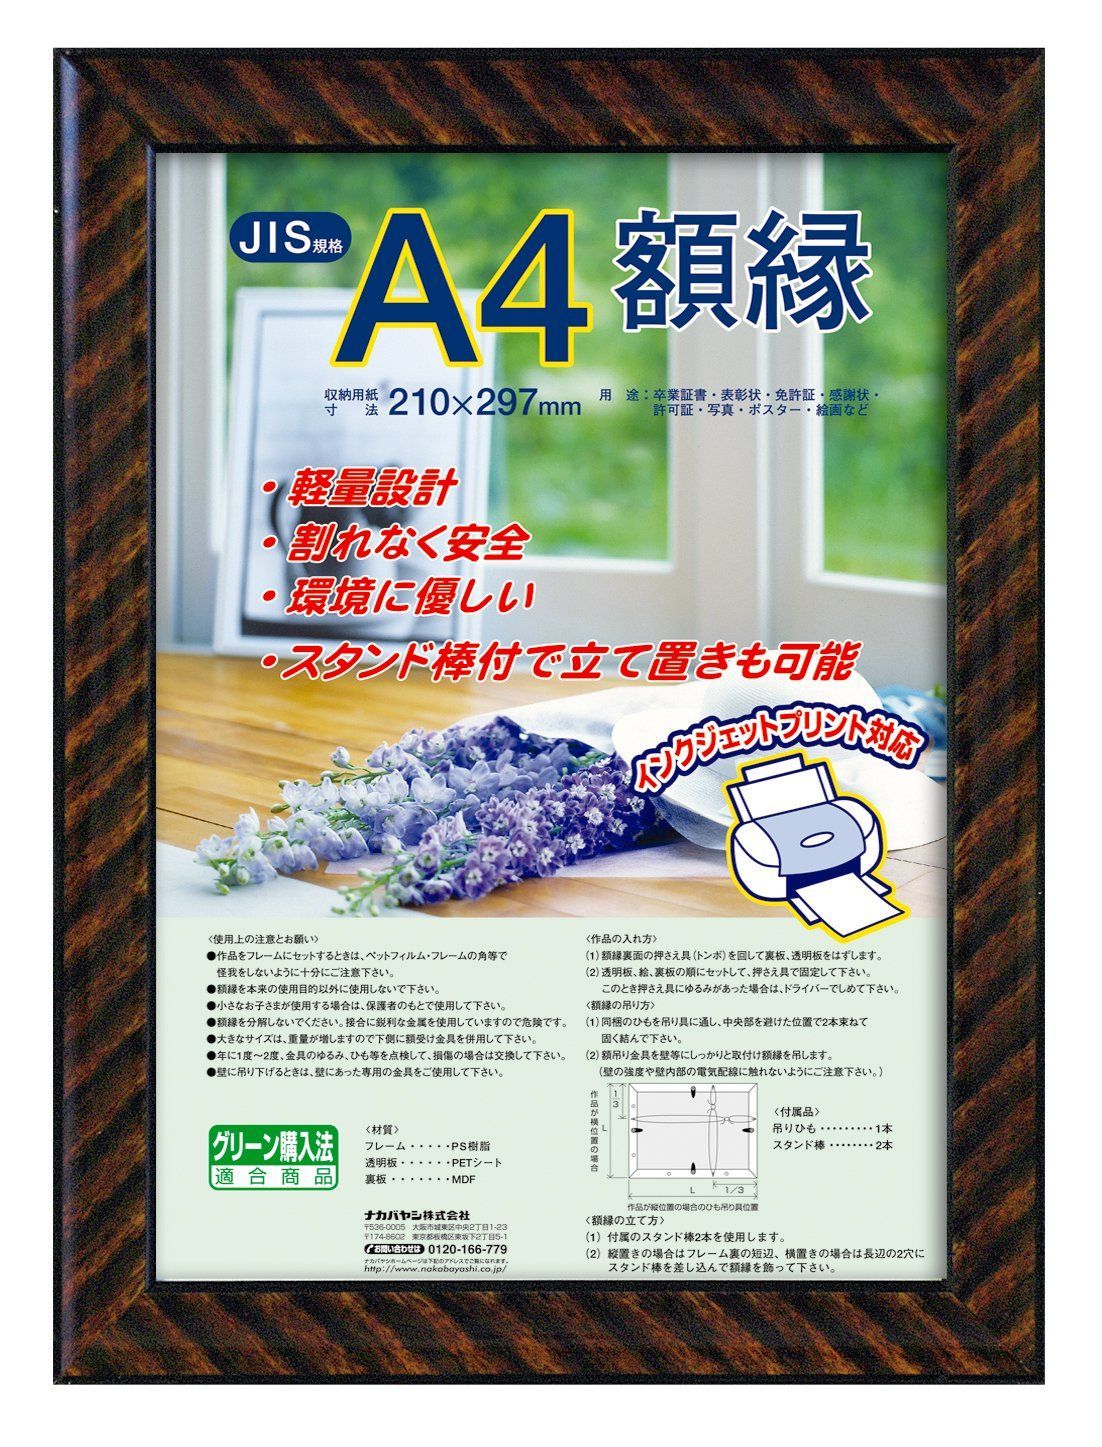 【新品・即日発送】ナカバヤシ 額縁 賞状 金ラック(樹脂製) JIS A4判 フ-KWP-13 N